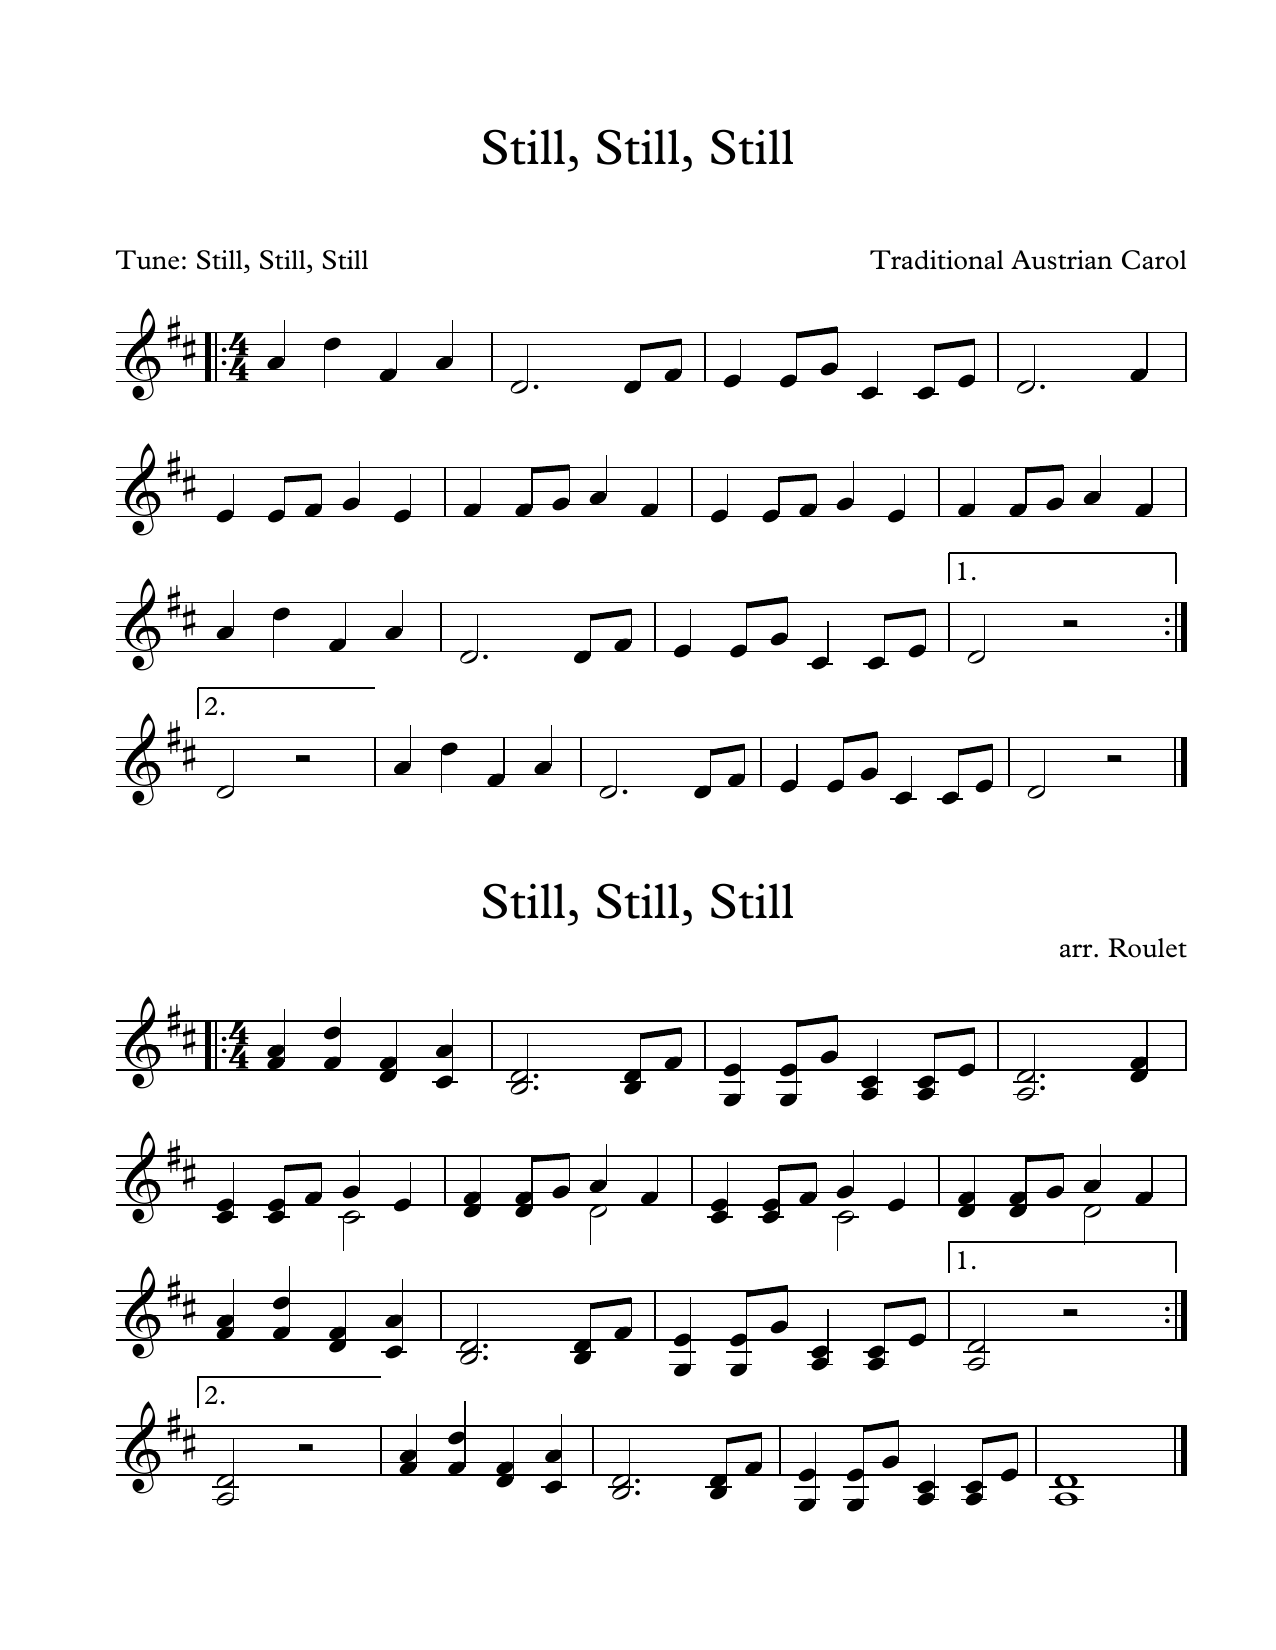 Traditional Austrian Carol Still, Still, Still (arr. Patrick Roulet) sheet music notes and chords arranged for Marimba Solo